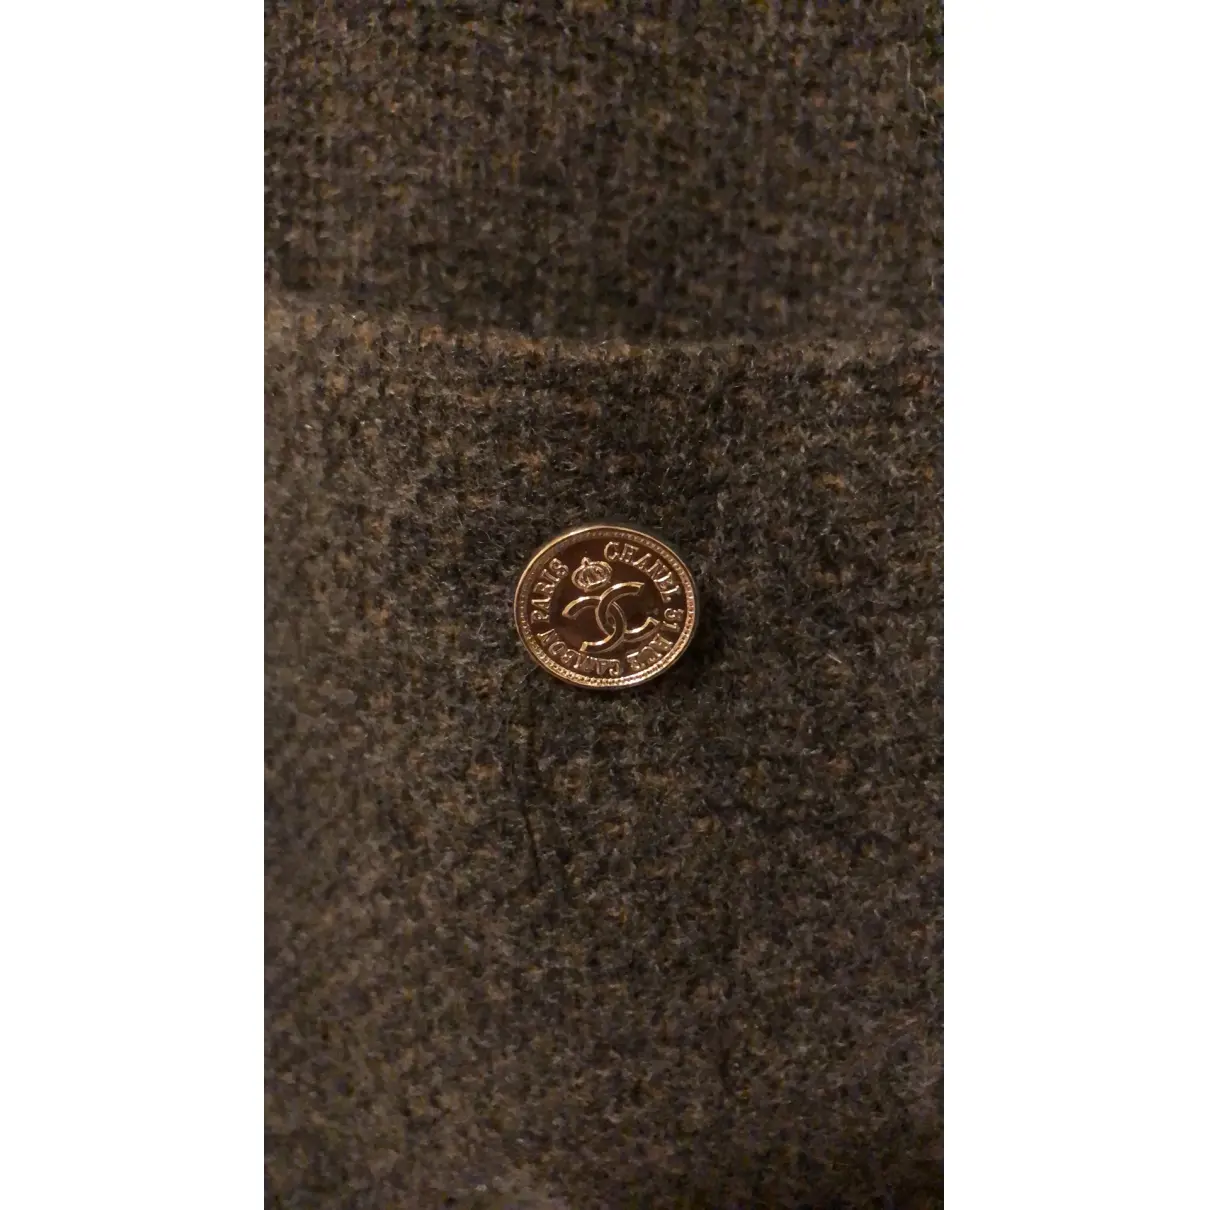 Cashmere jacket Chanel - Vintage